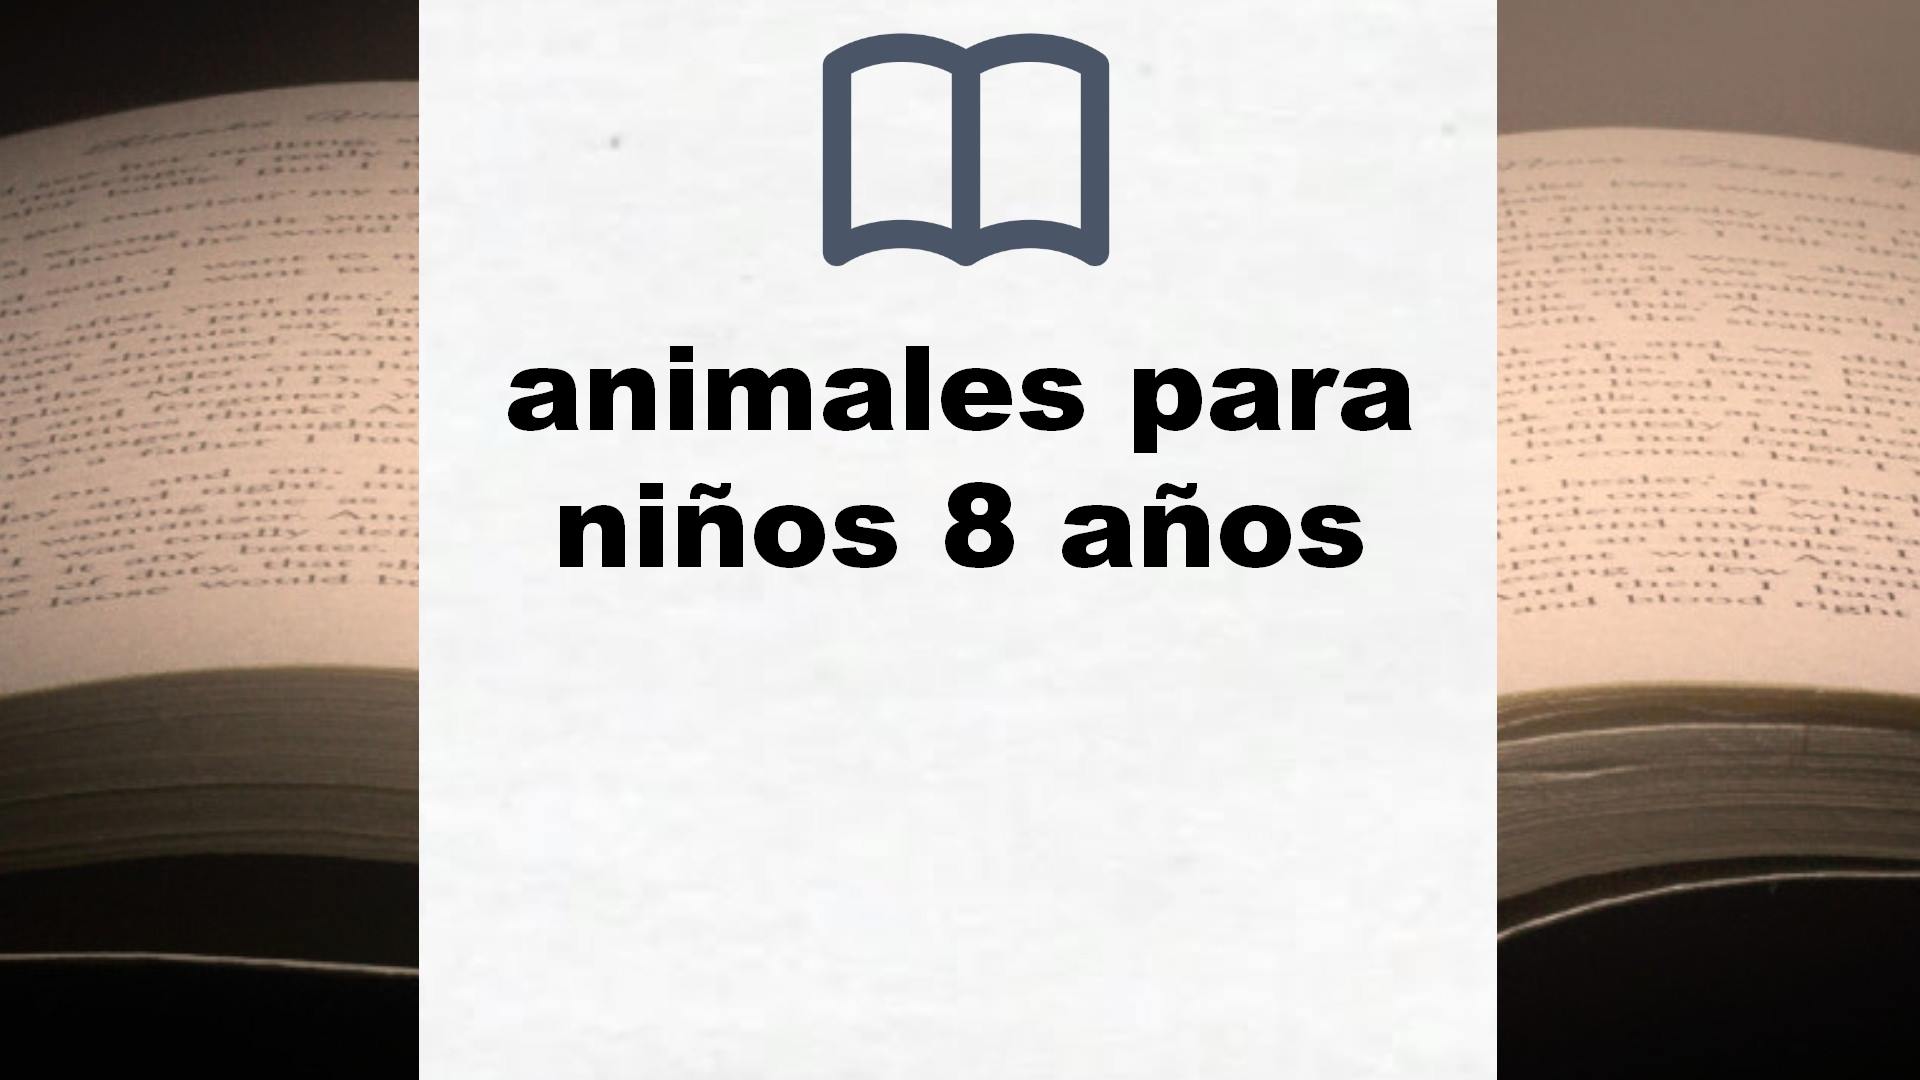 Libros sobre animales para niños 8 años